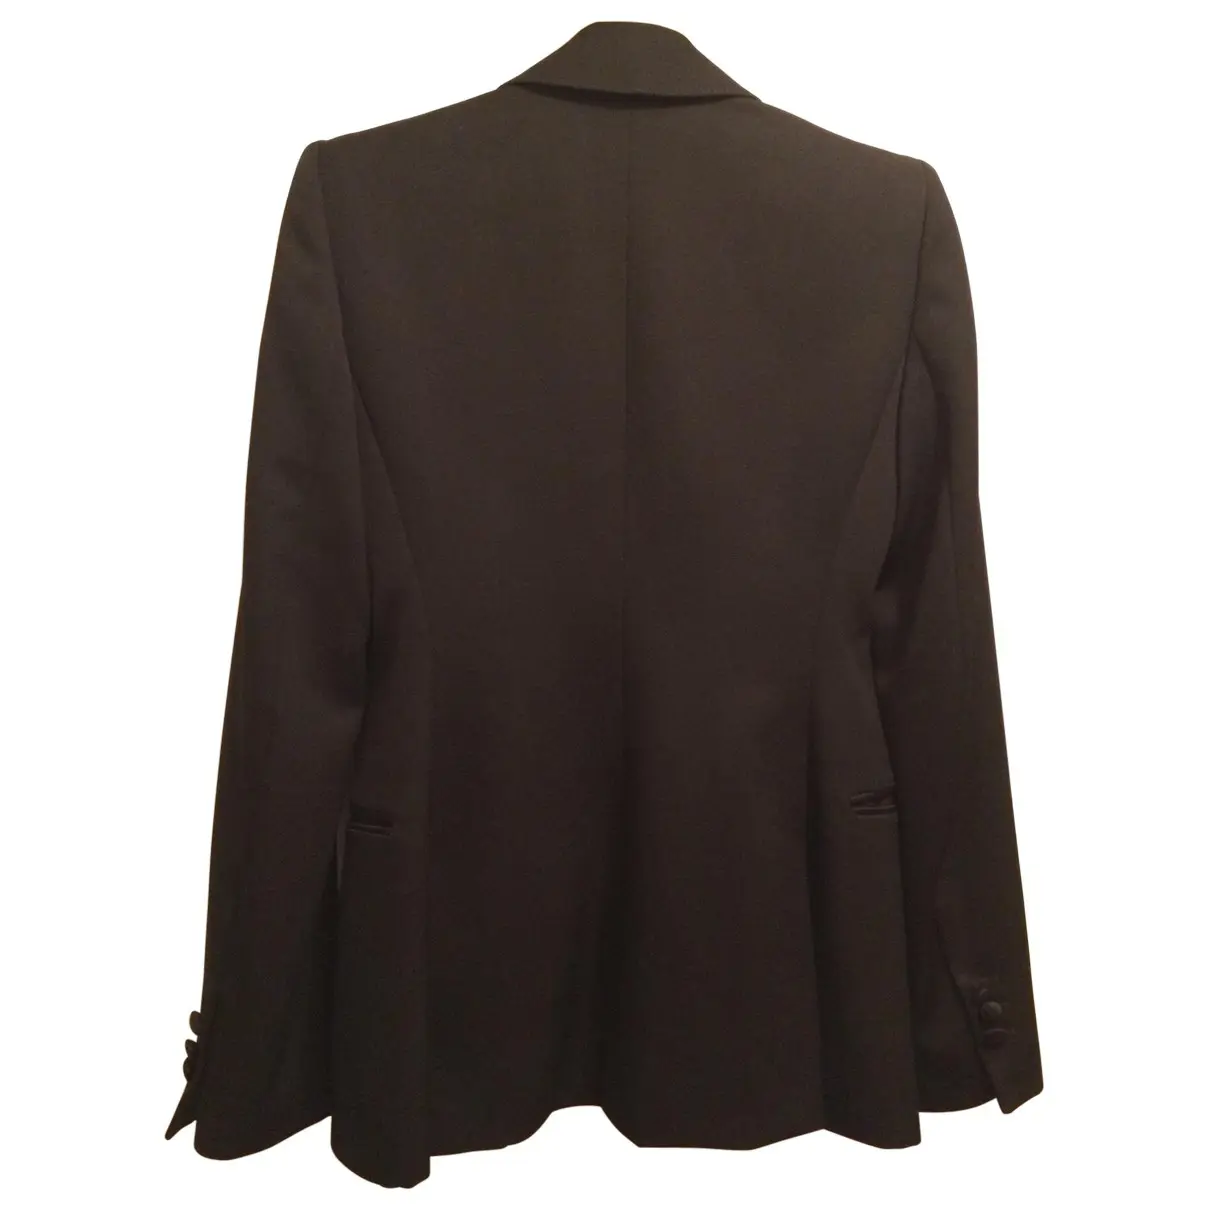 Buy Yves Saint Laurent Black Wool Jacket online